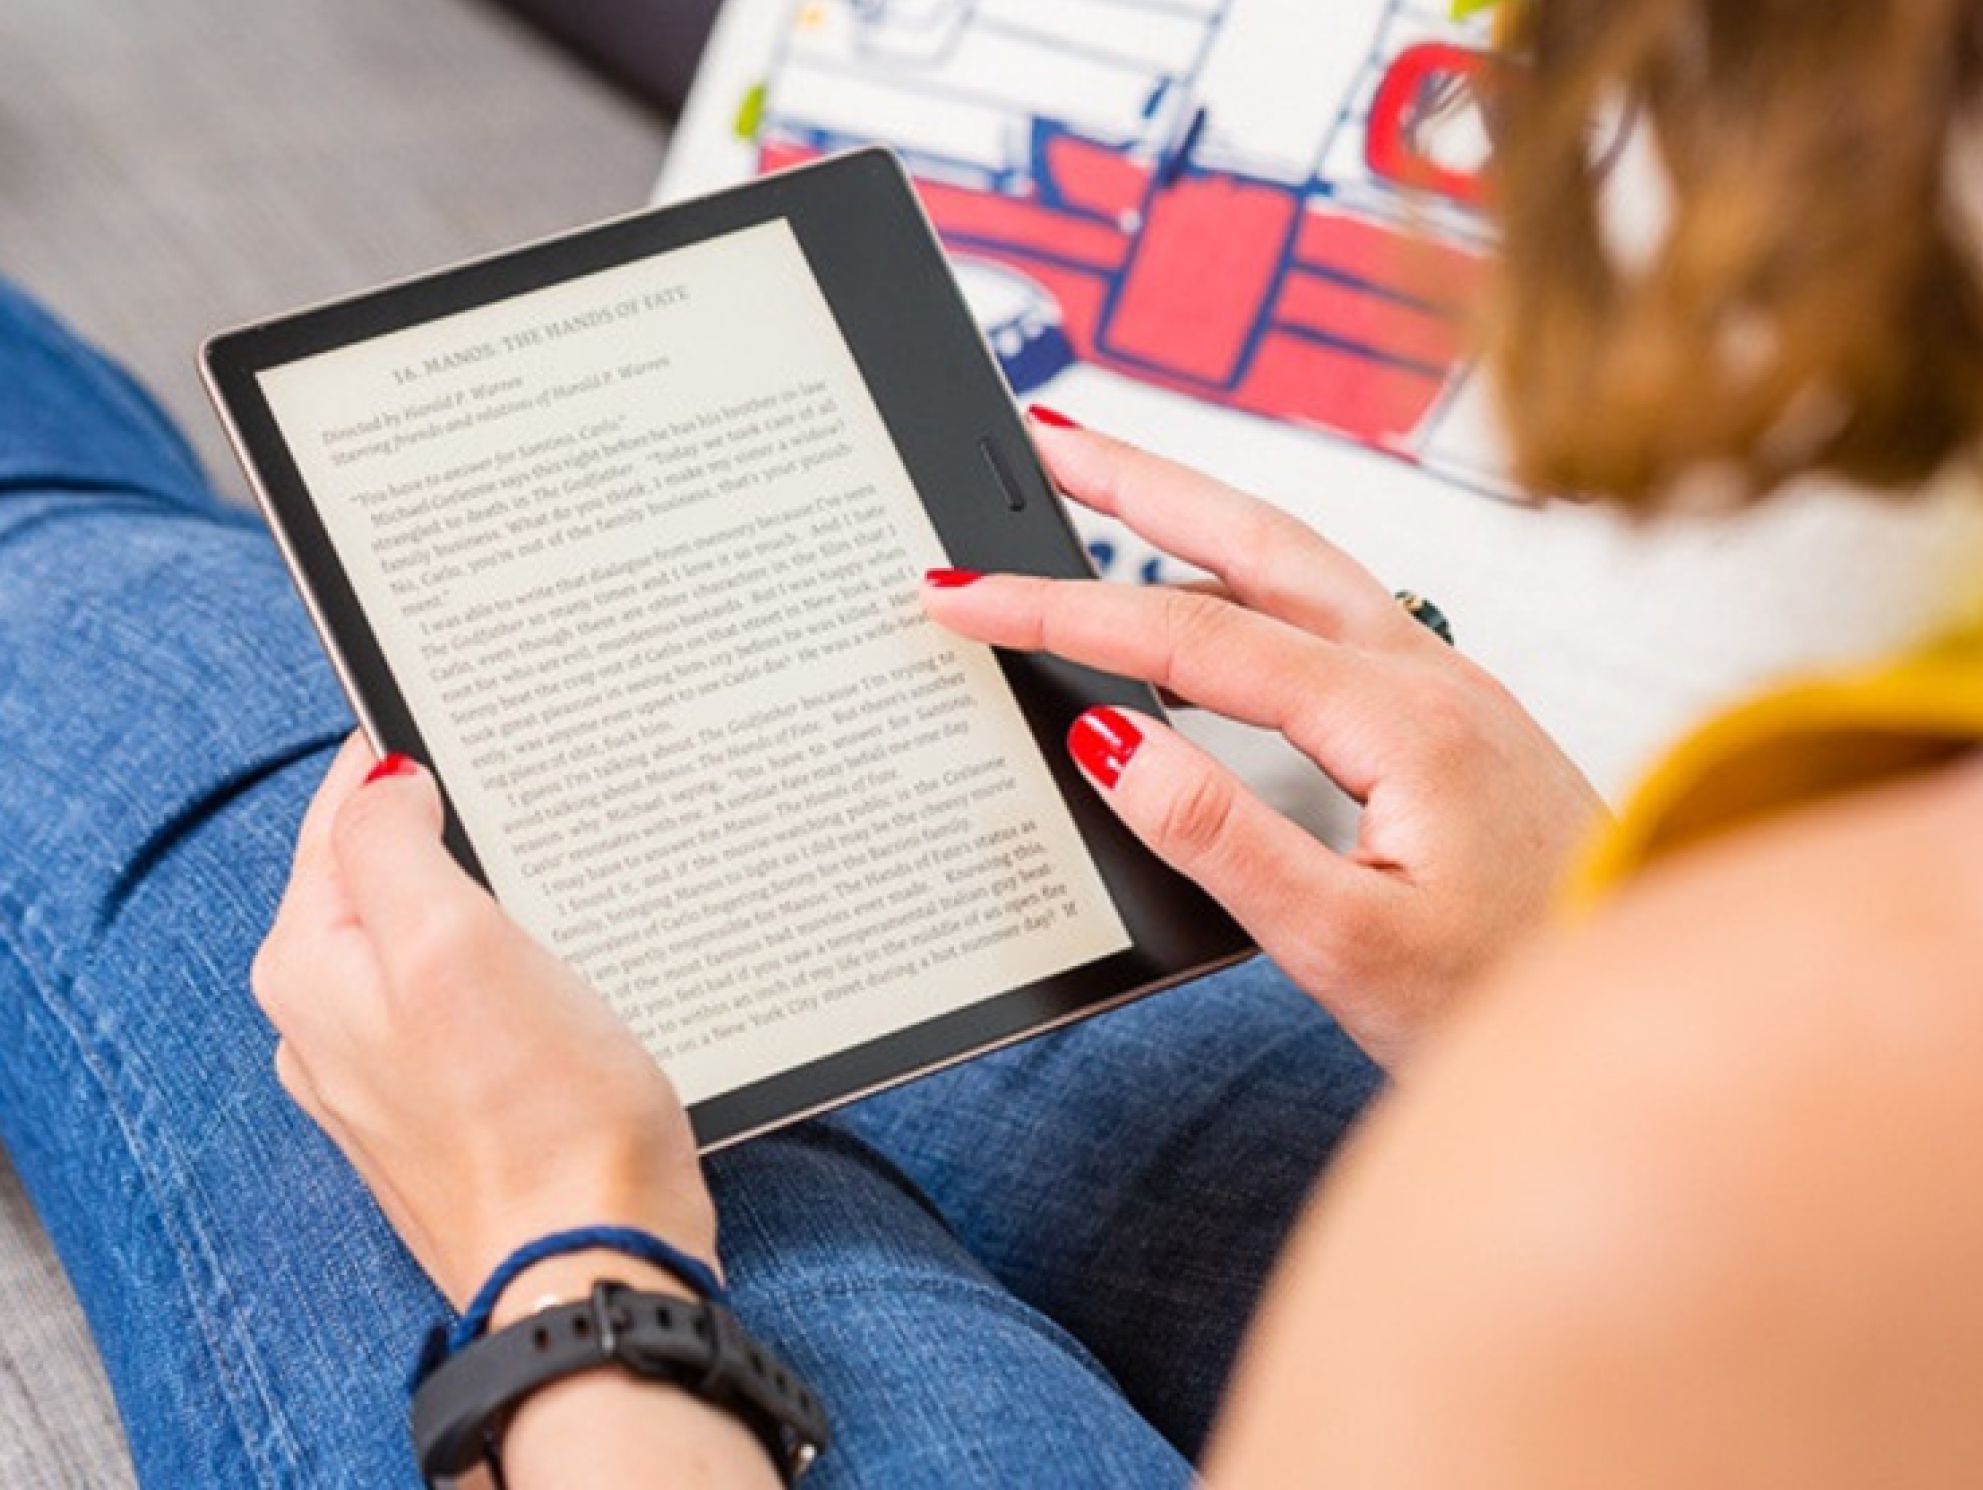 E book is. Девушка с электронной книгой. Электронная книга читать. Человек с электронной книгой. Чтение электронных книг.